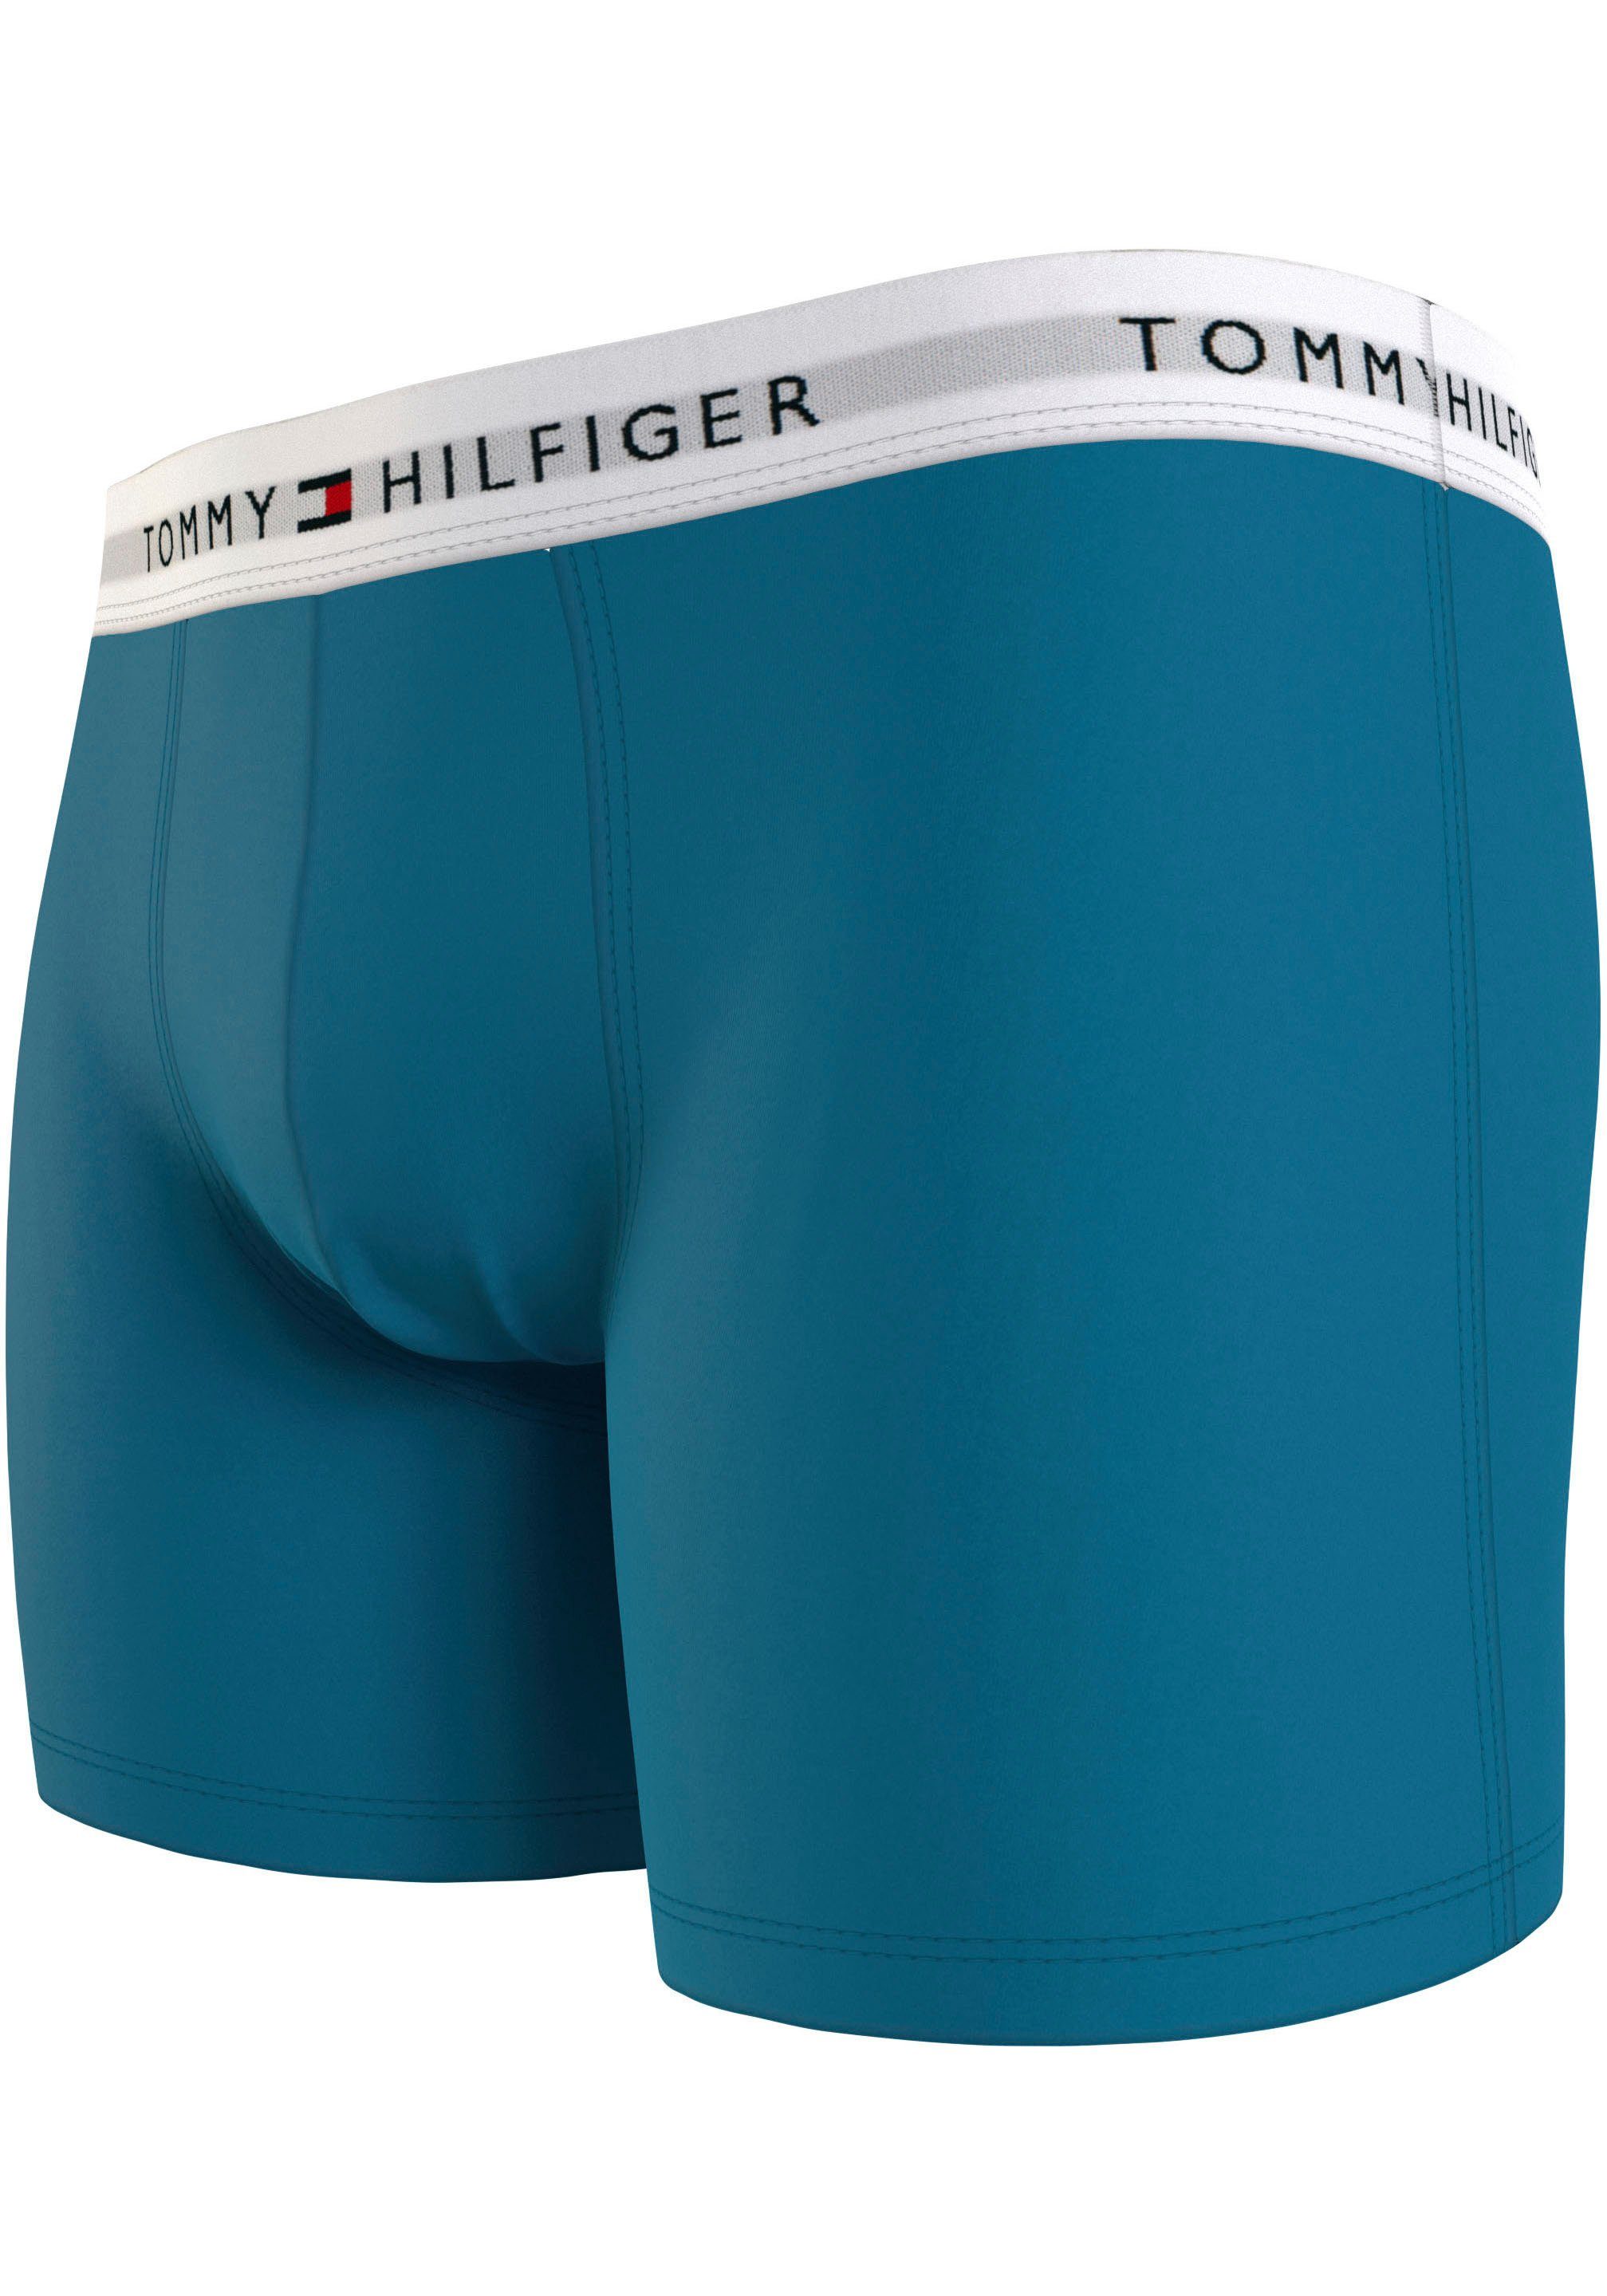 Aqua/Ant Logo-Elastikbund BRIEF Hilfiger 3er-Pack) Boxer Tommy Silver/Fireworks BOXER 3P Cerulean Underwear (Packung, mit